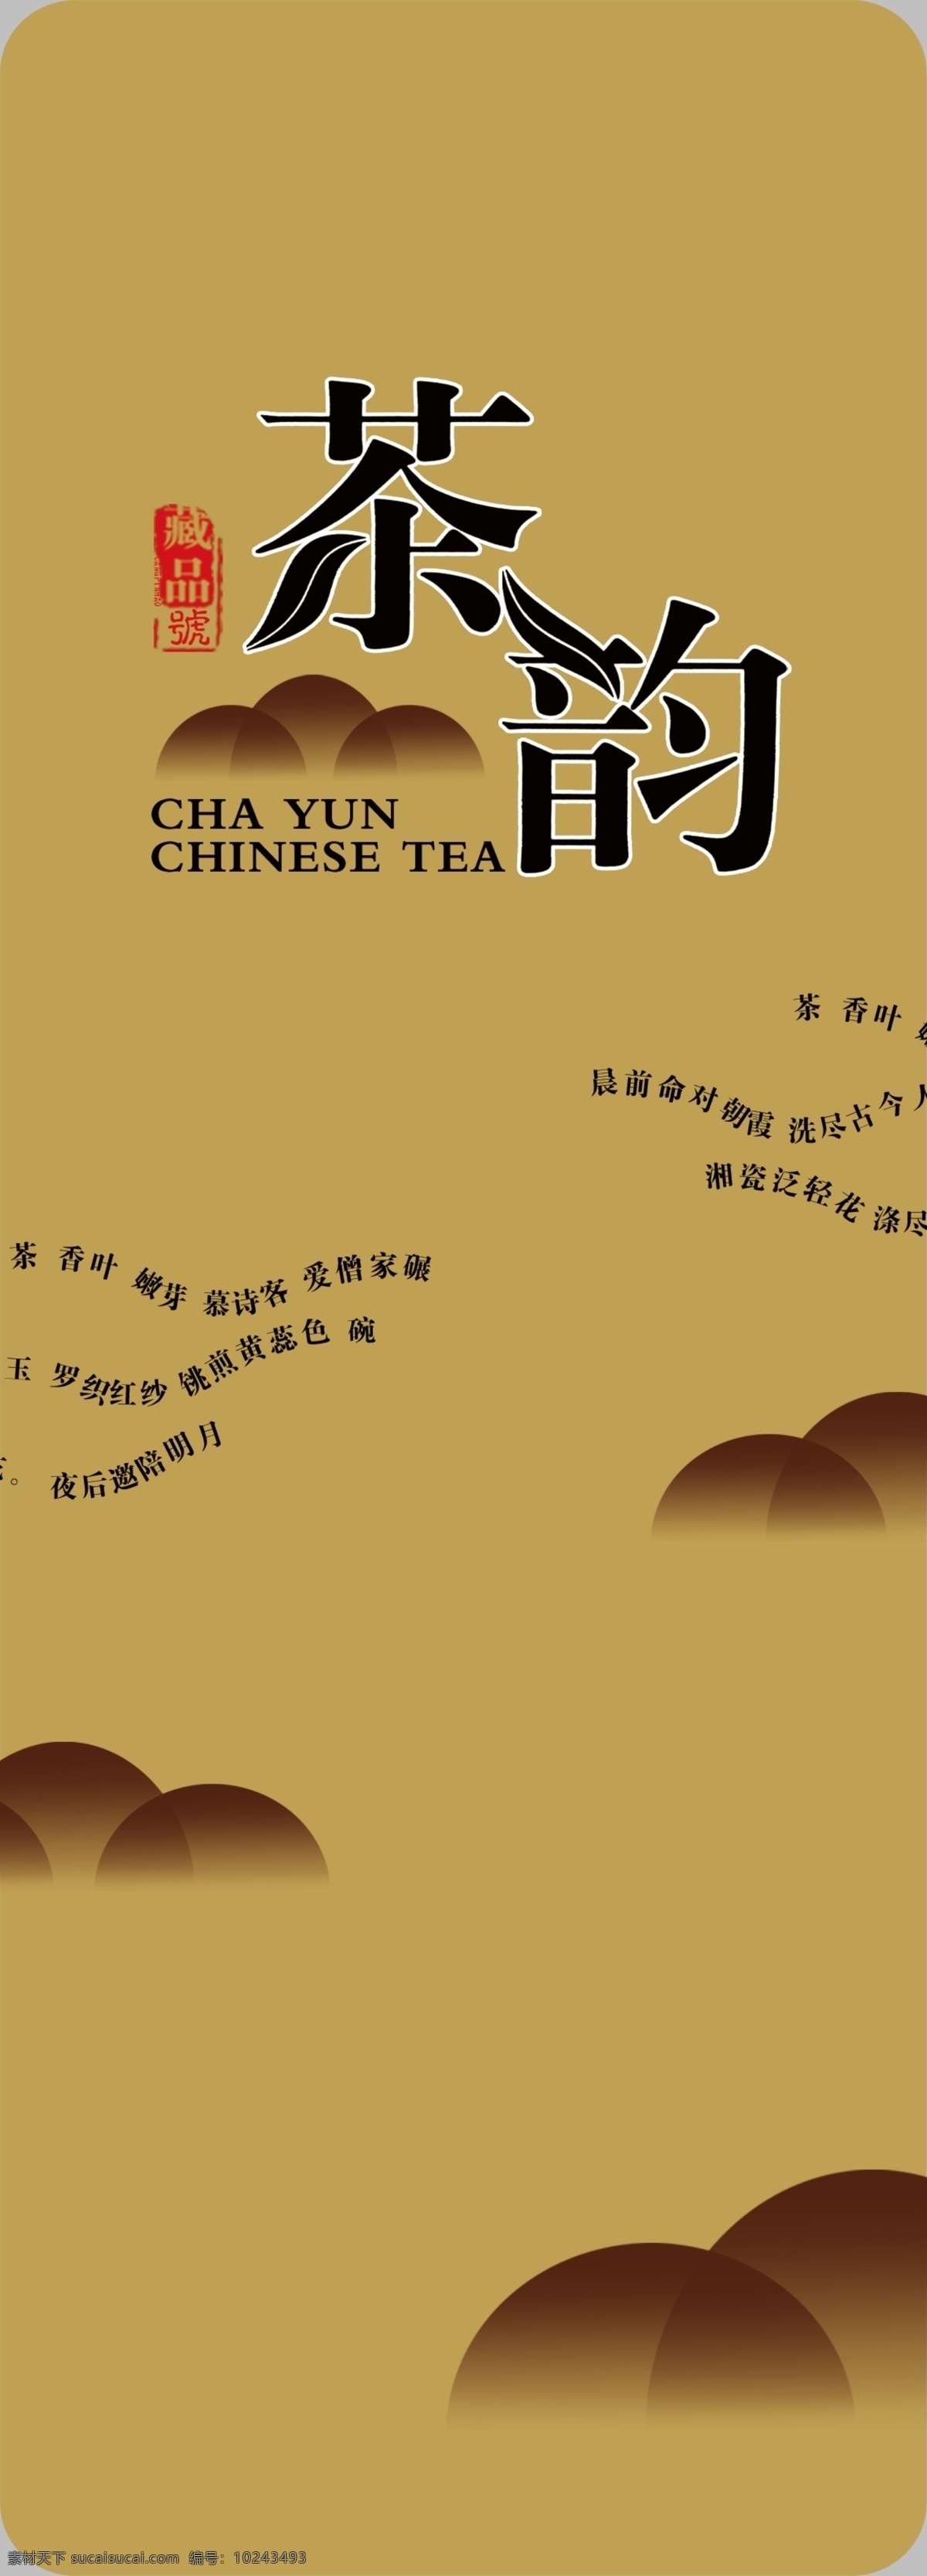 茶叶罐 铁罐 铁盒 茶包装 茶叶包装设计 中国风 茶叶礼盒 礼盒 包装素材 简易盒包装 广告设计模板 源文件 灰色